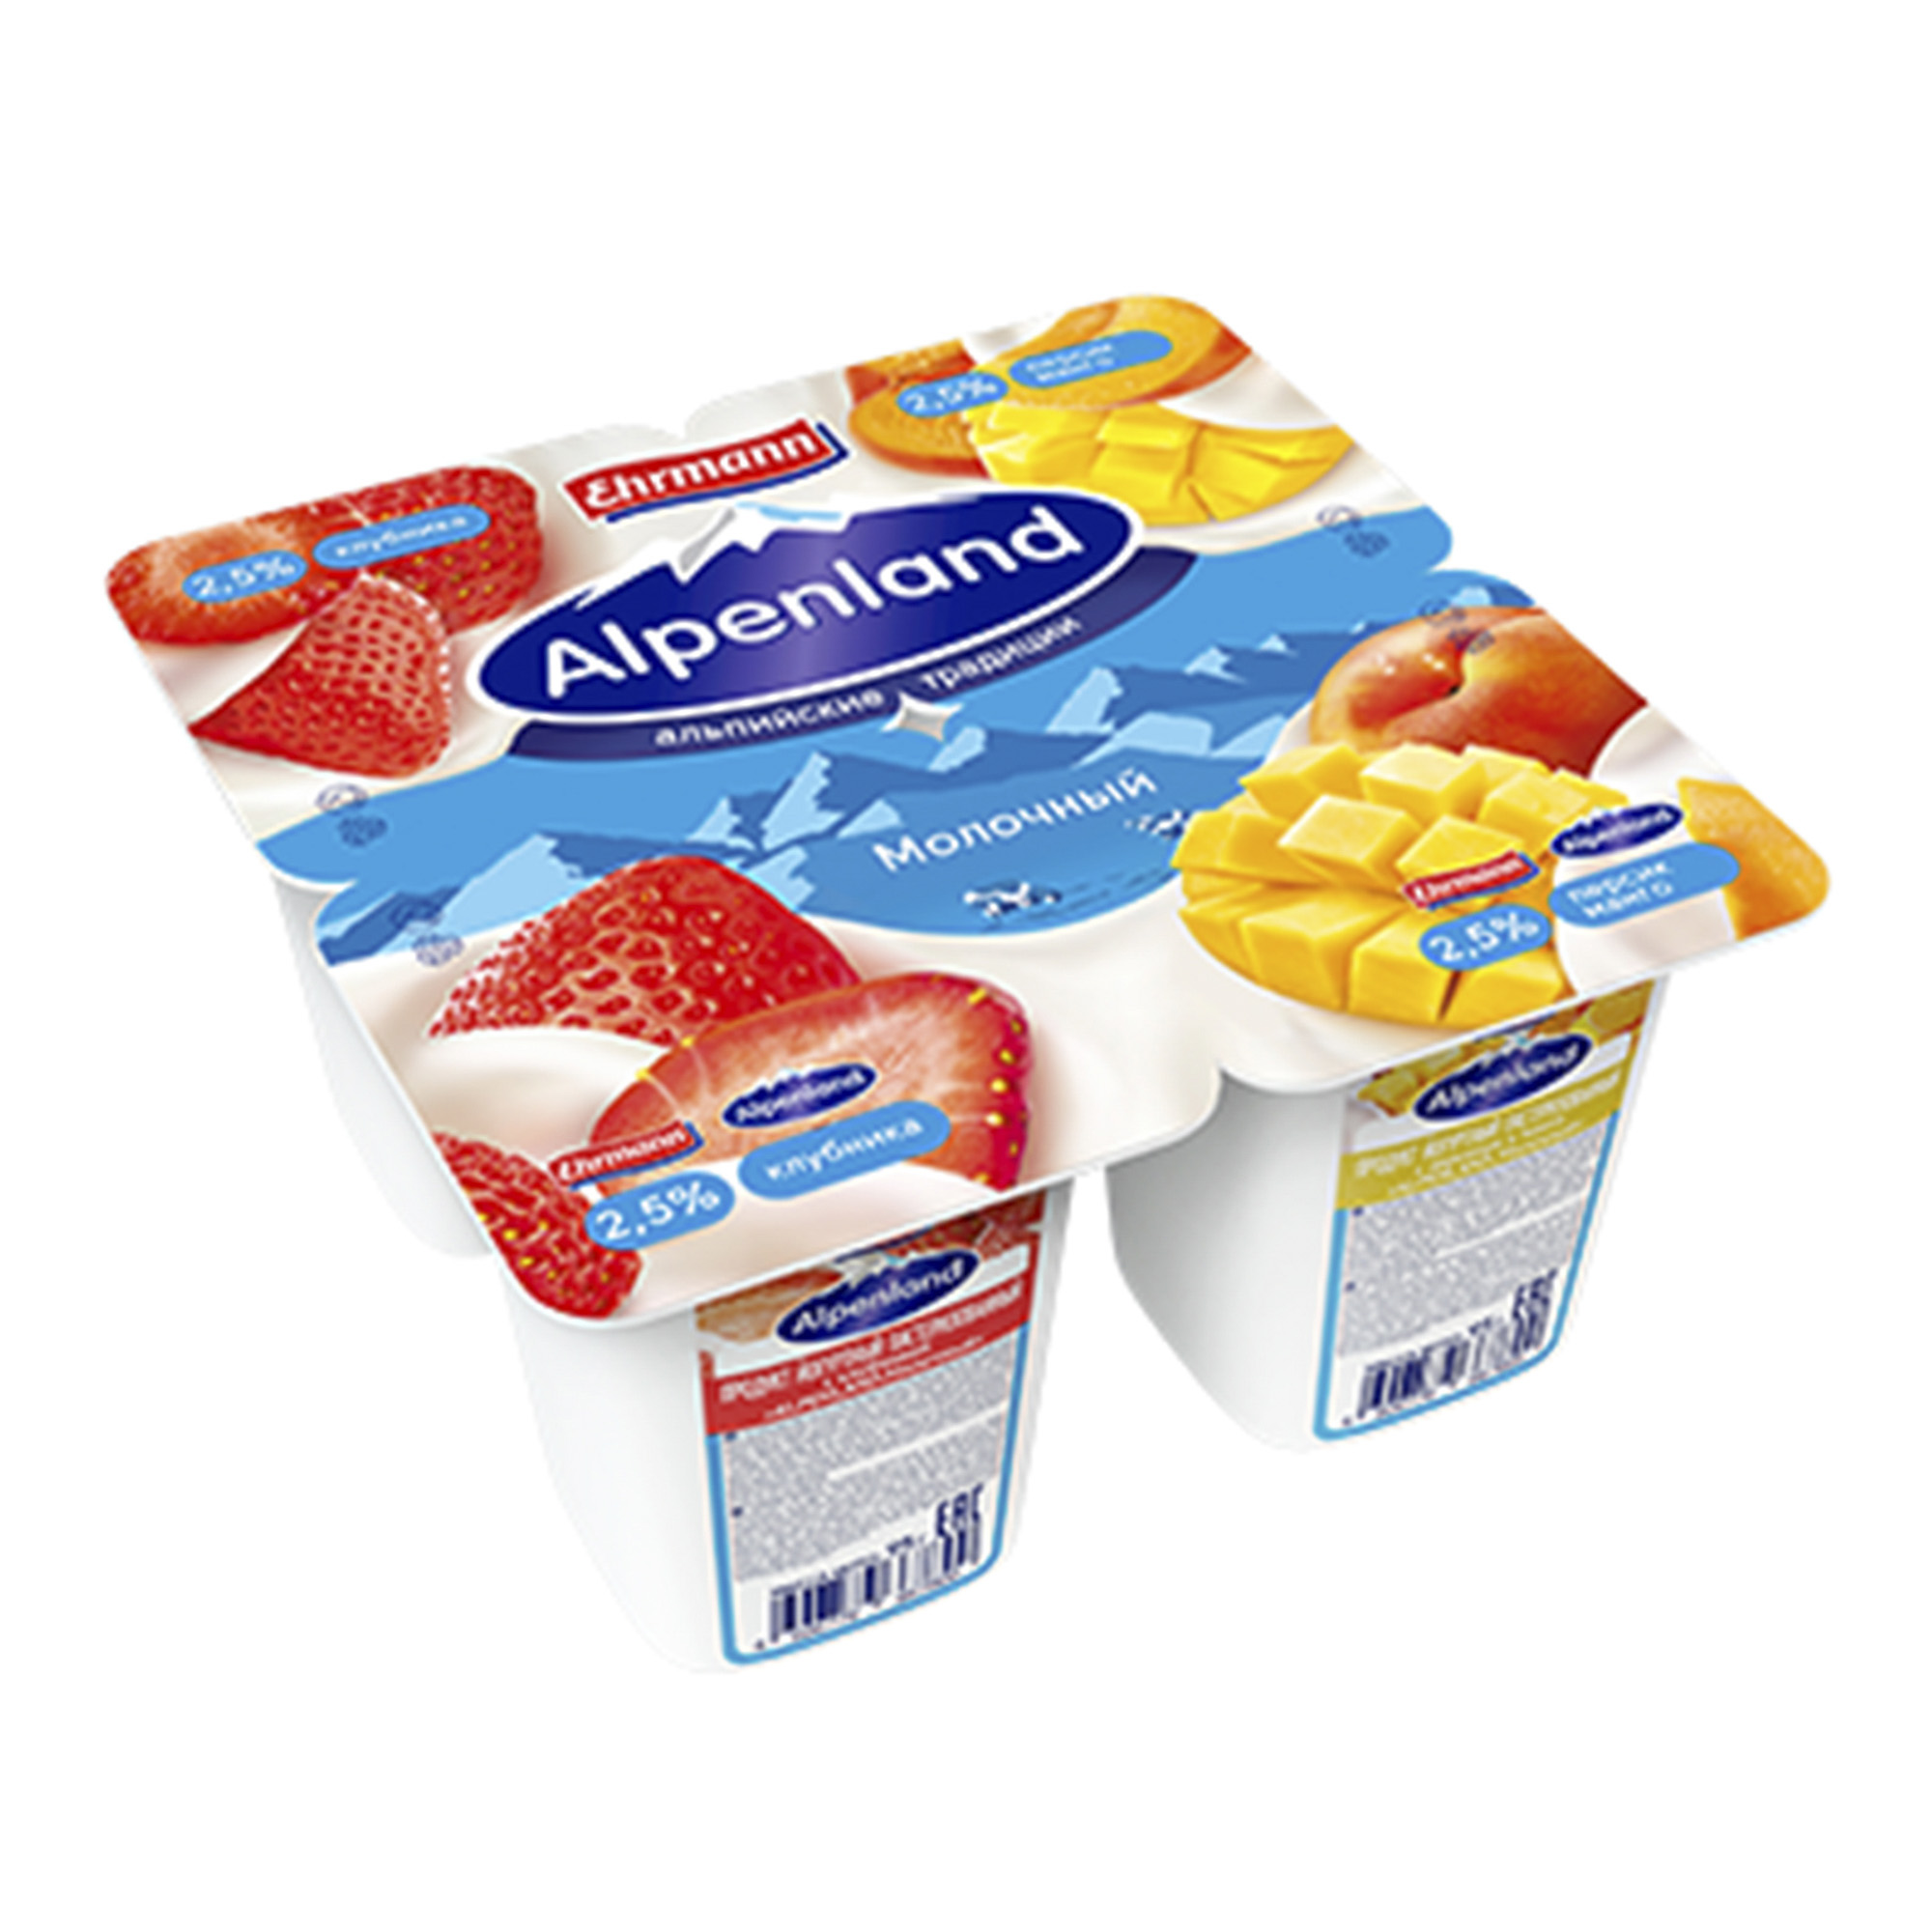 Йогуртный продукт Alpenland Молочный Клубника персик манго 2,5% 95 г х 4 шт